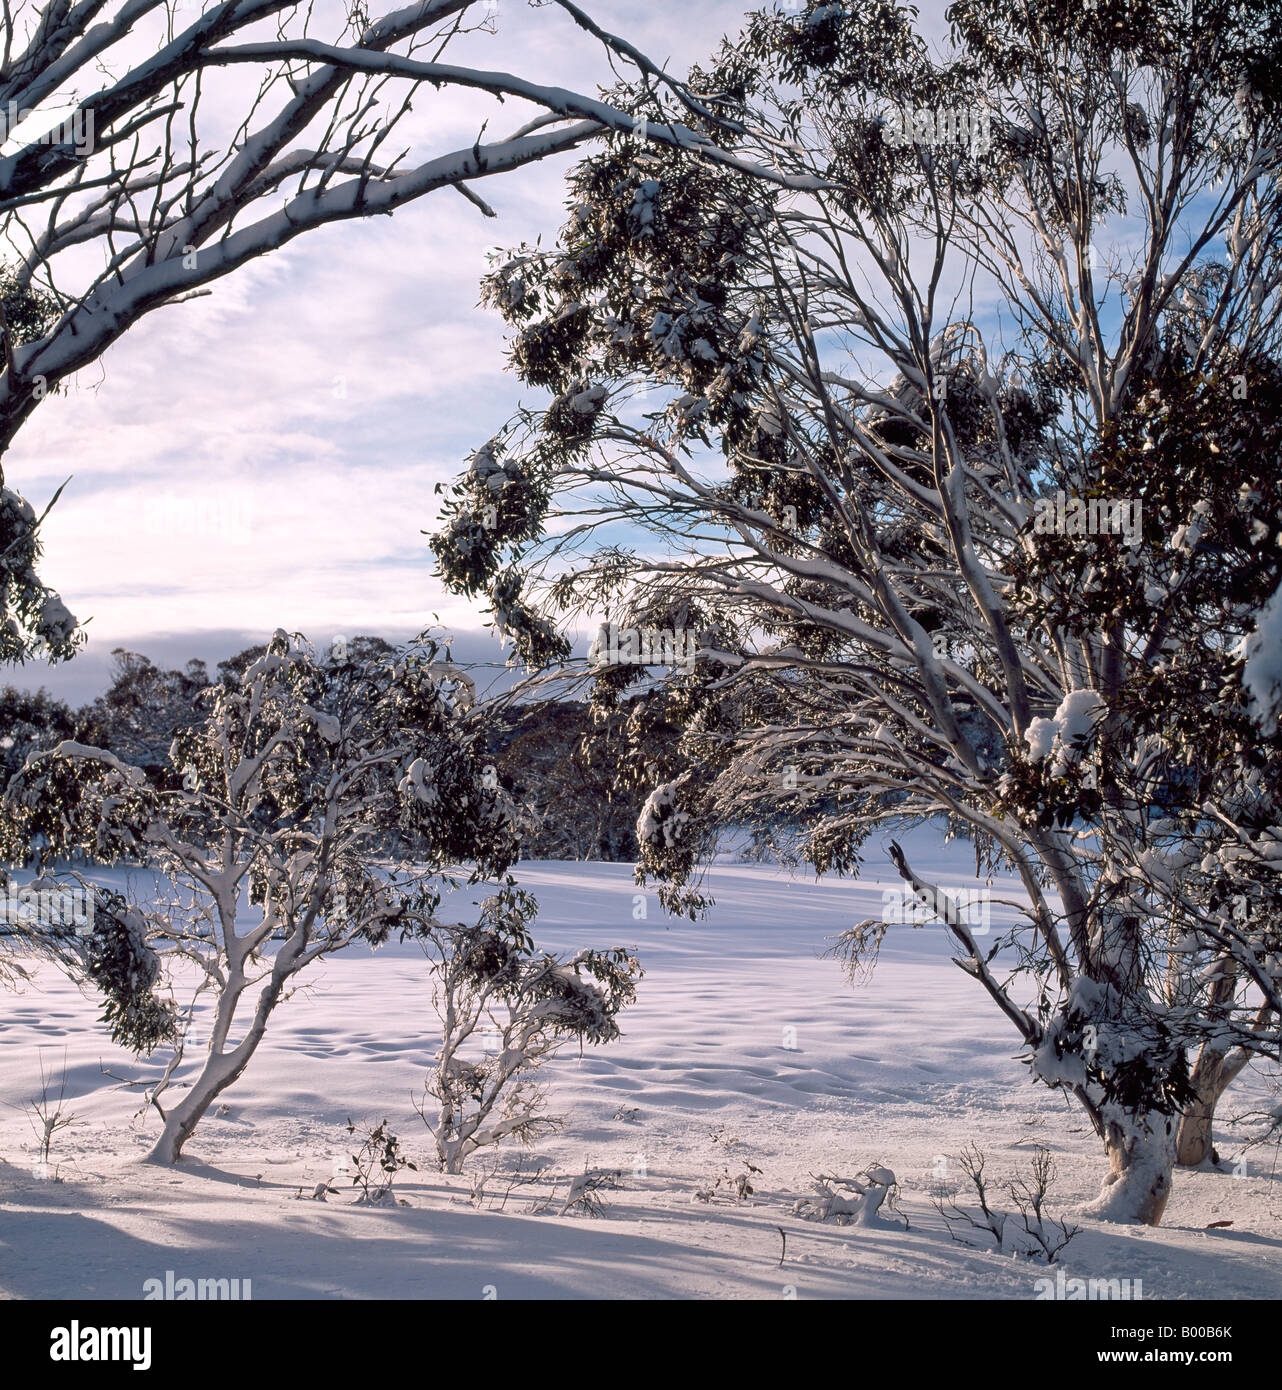 Les gencives de la neige en hiver près de Mt Selwyn montagnes enneigées du Parc National Kosciuszko Australie Nouvelle Galles du Sud Banque D'Images